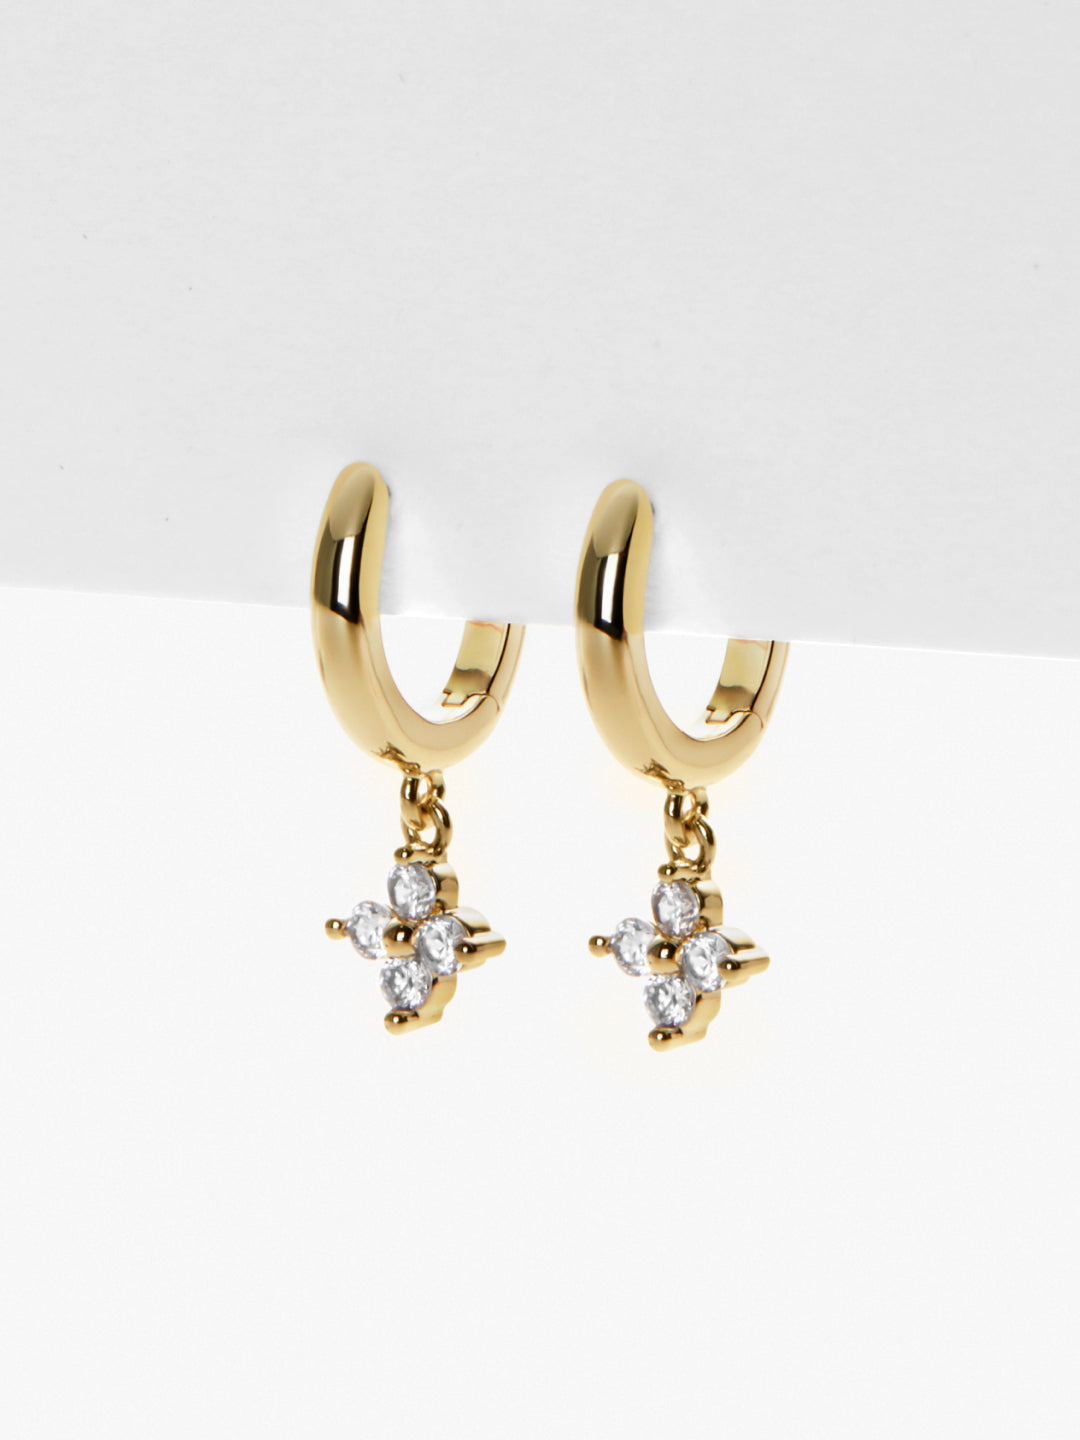 Ana Luisa Jewelry Earrings Huggie Gold Huggie Hoop Earrings Angela Gold